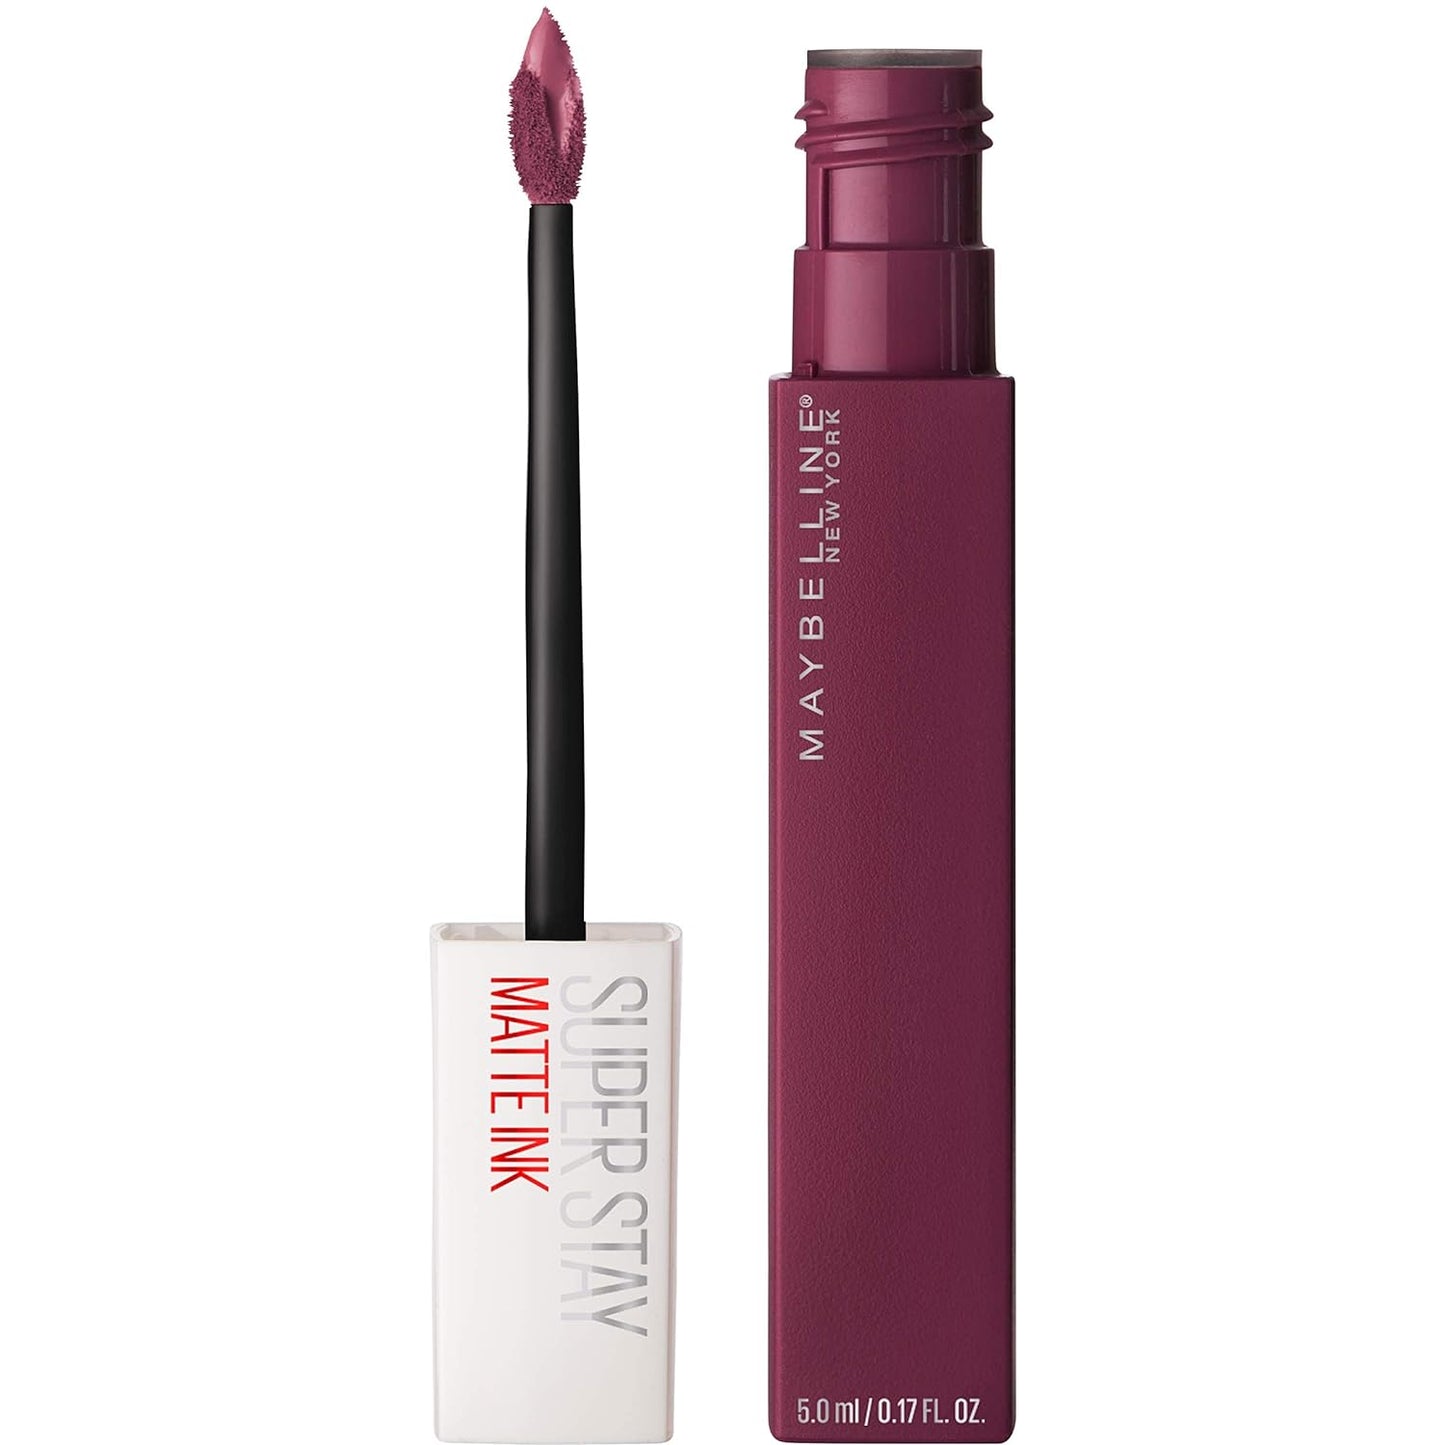 Maybelline (Thailand) Super Stay Matte Ink Liquid Lipstick 40 Believer